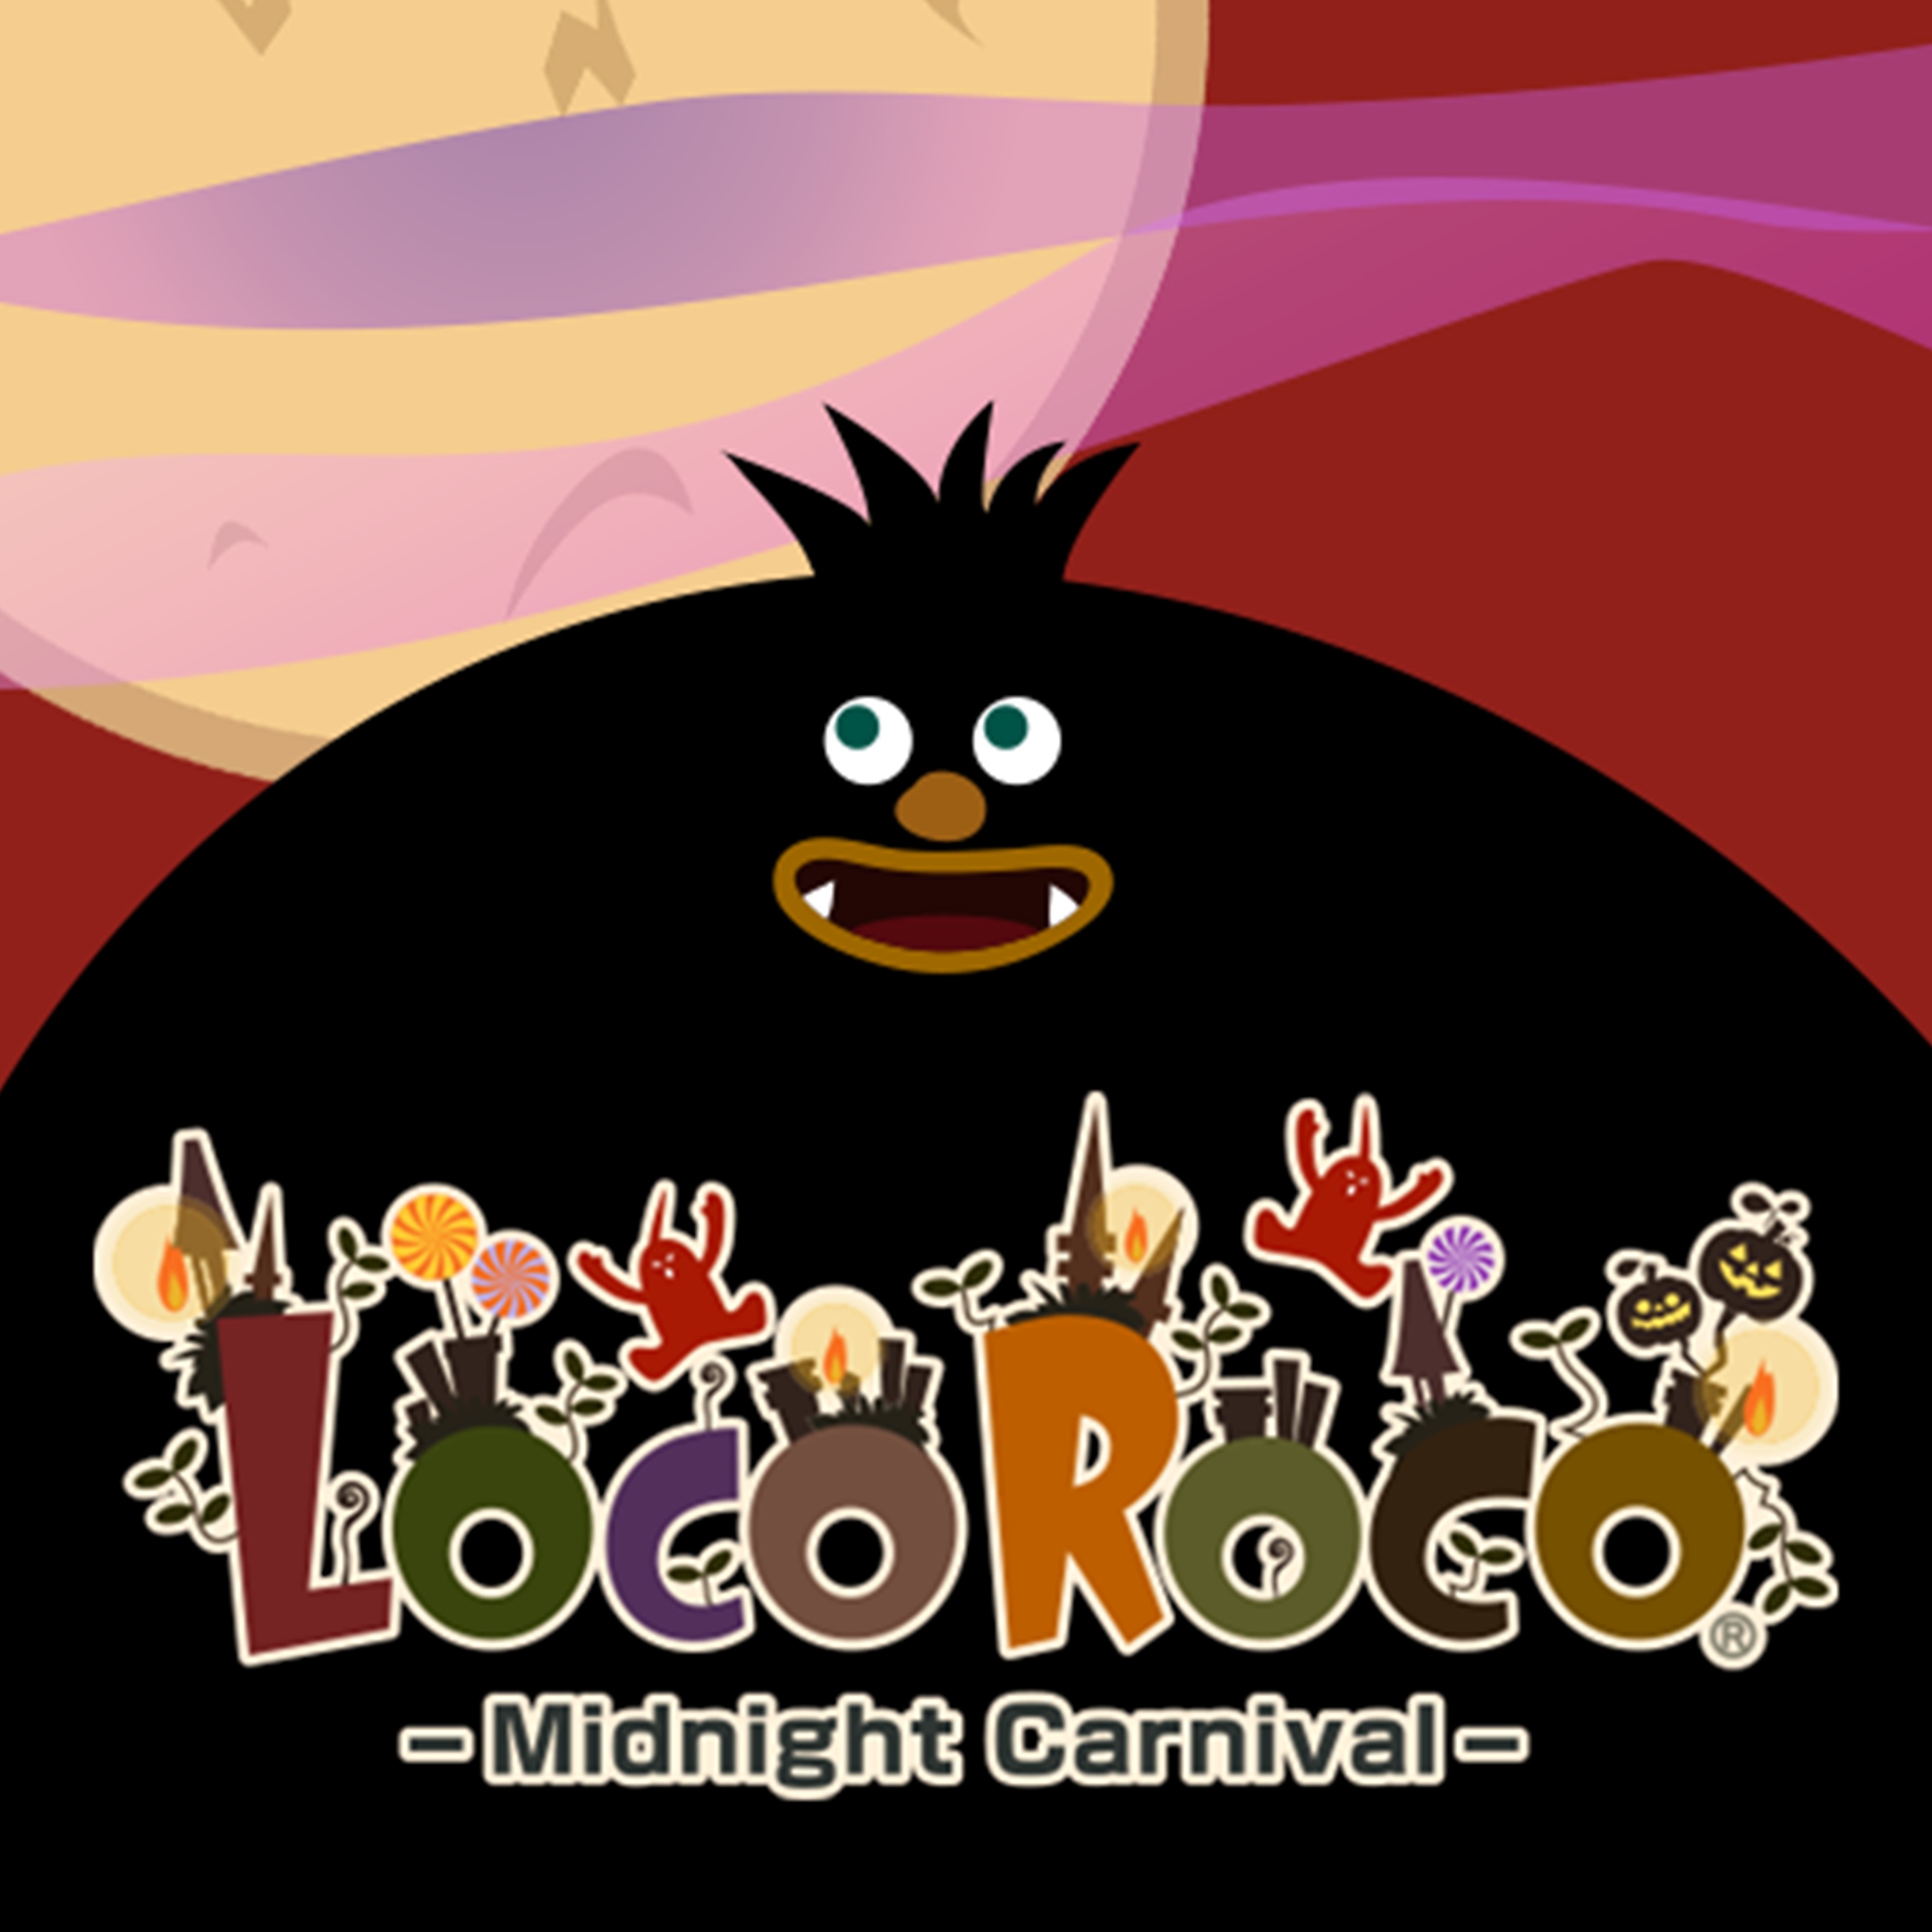 LocoRoco Midnight Carnival – Grafik mit großer, schwarzer Cartoon-Figur